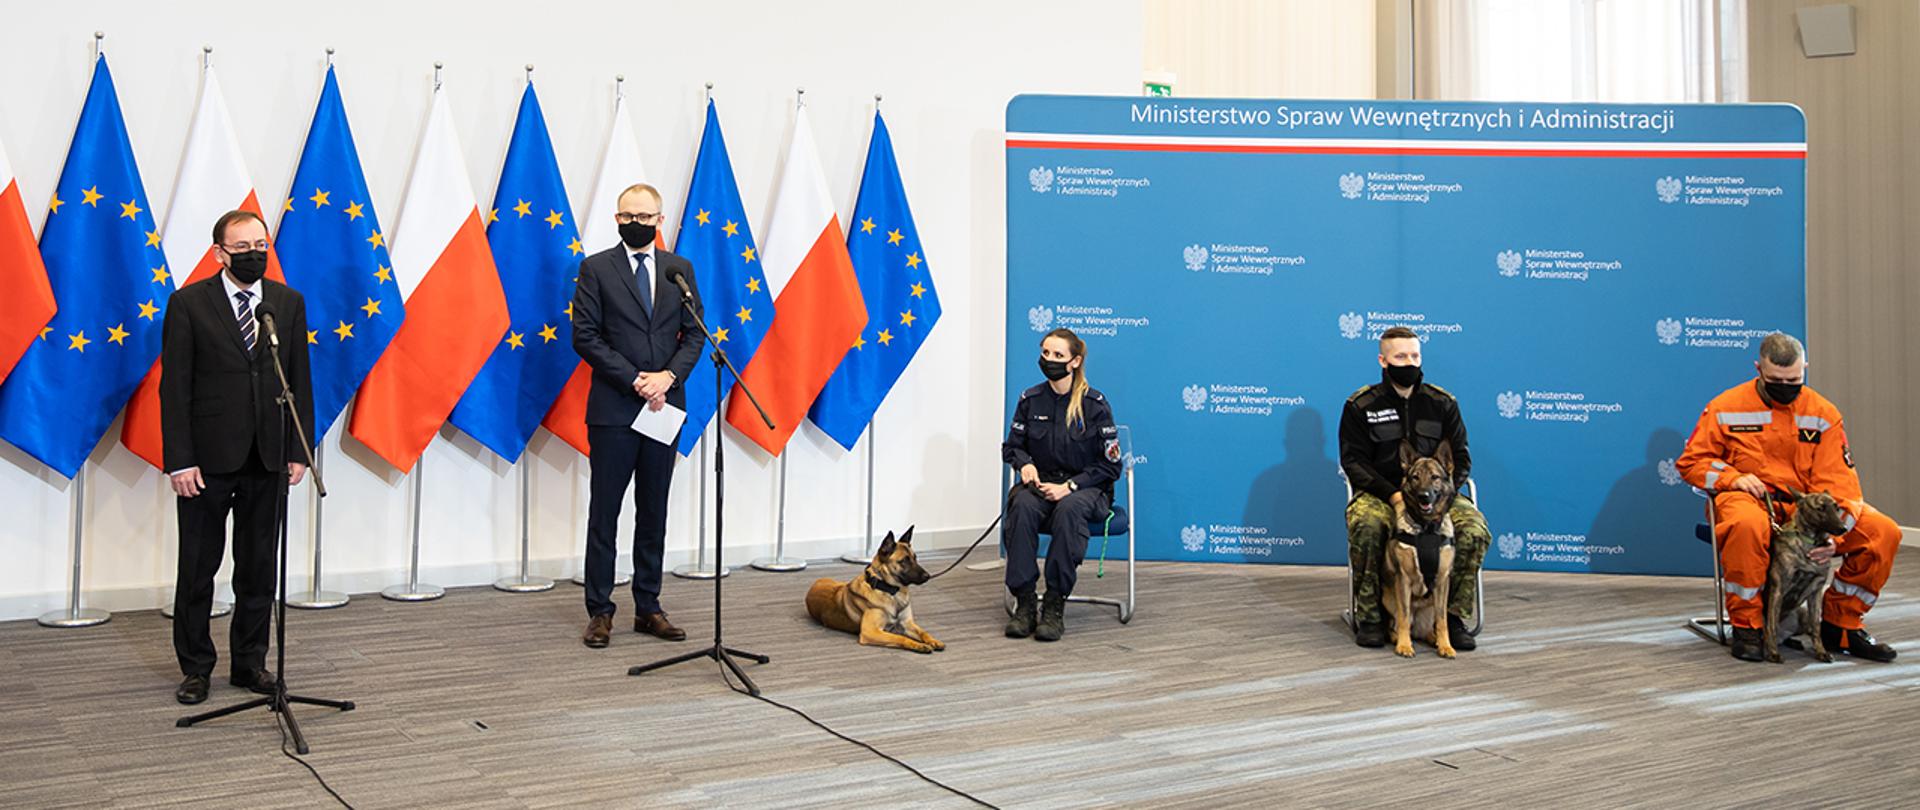 Na zdjęciu: minister Mariusz Kamiński, wiceminister Błażej Poboży oraz opiekunowie psów służbowych z podopiecznymi